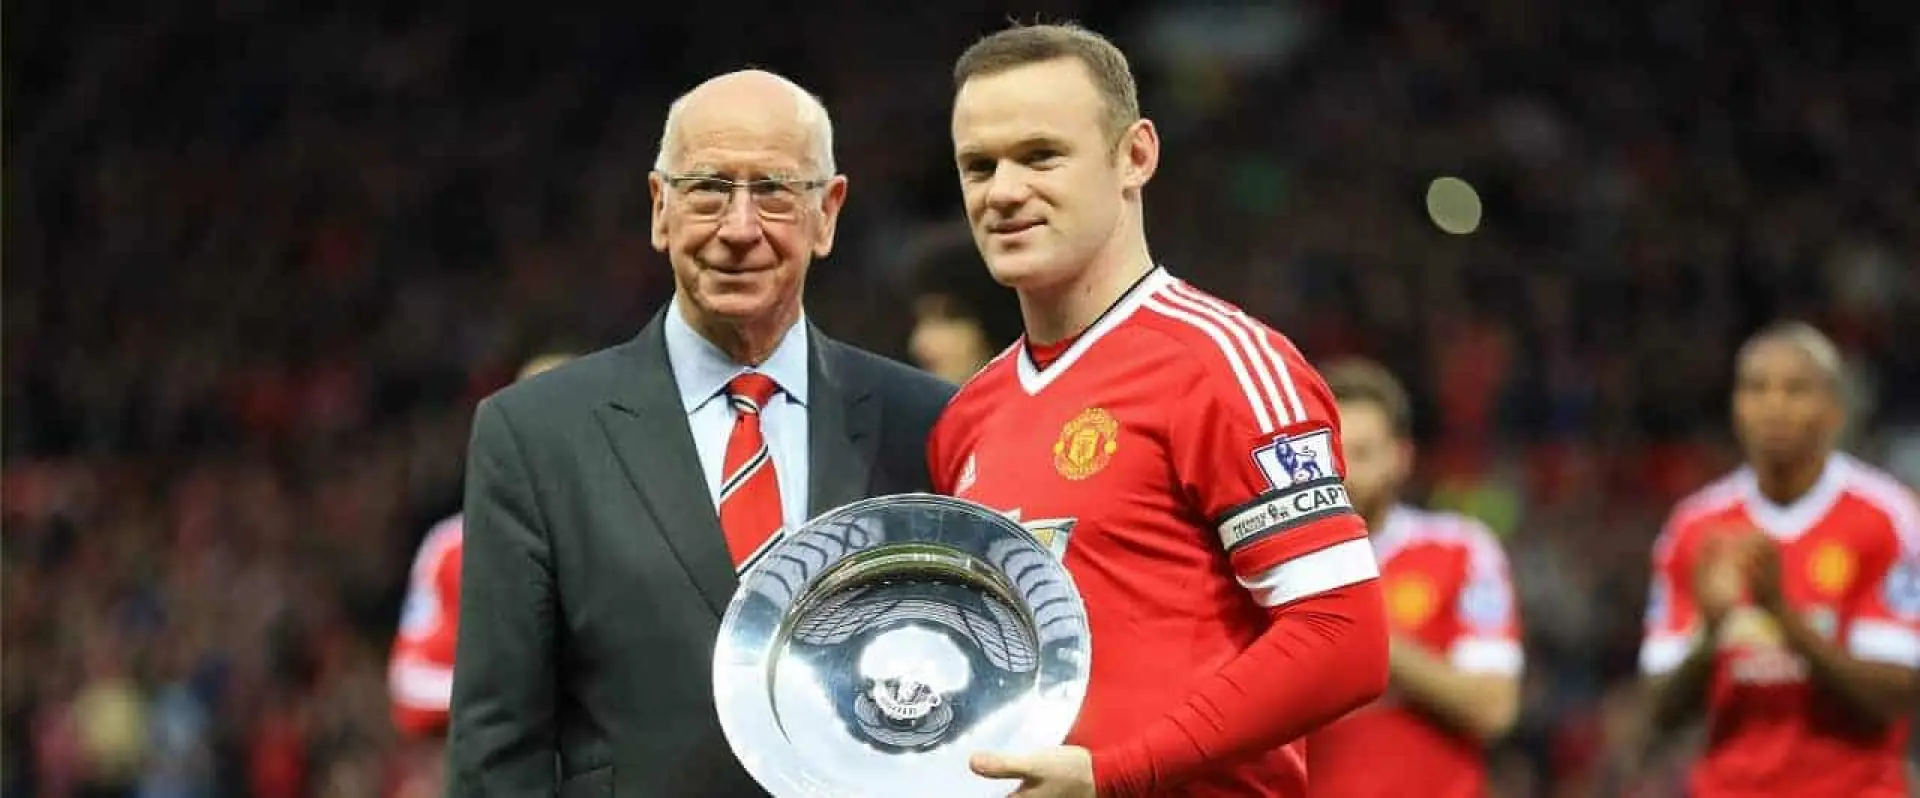 When will Wayne Rooney break Man Utd score record?